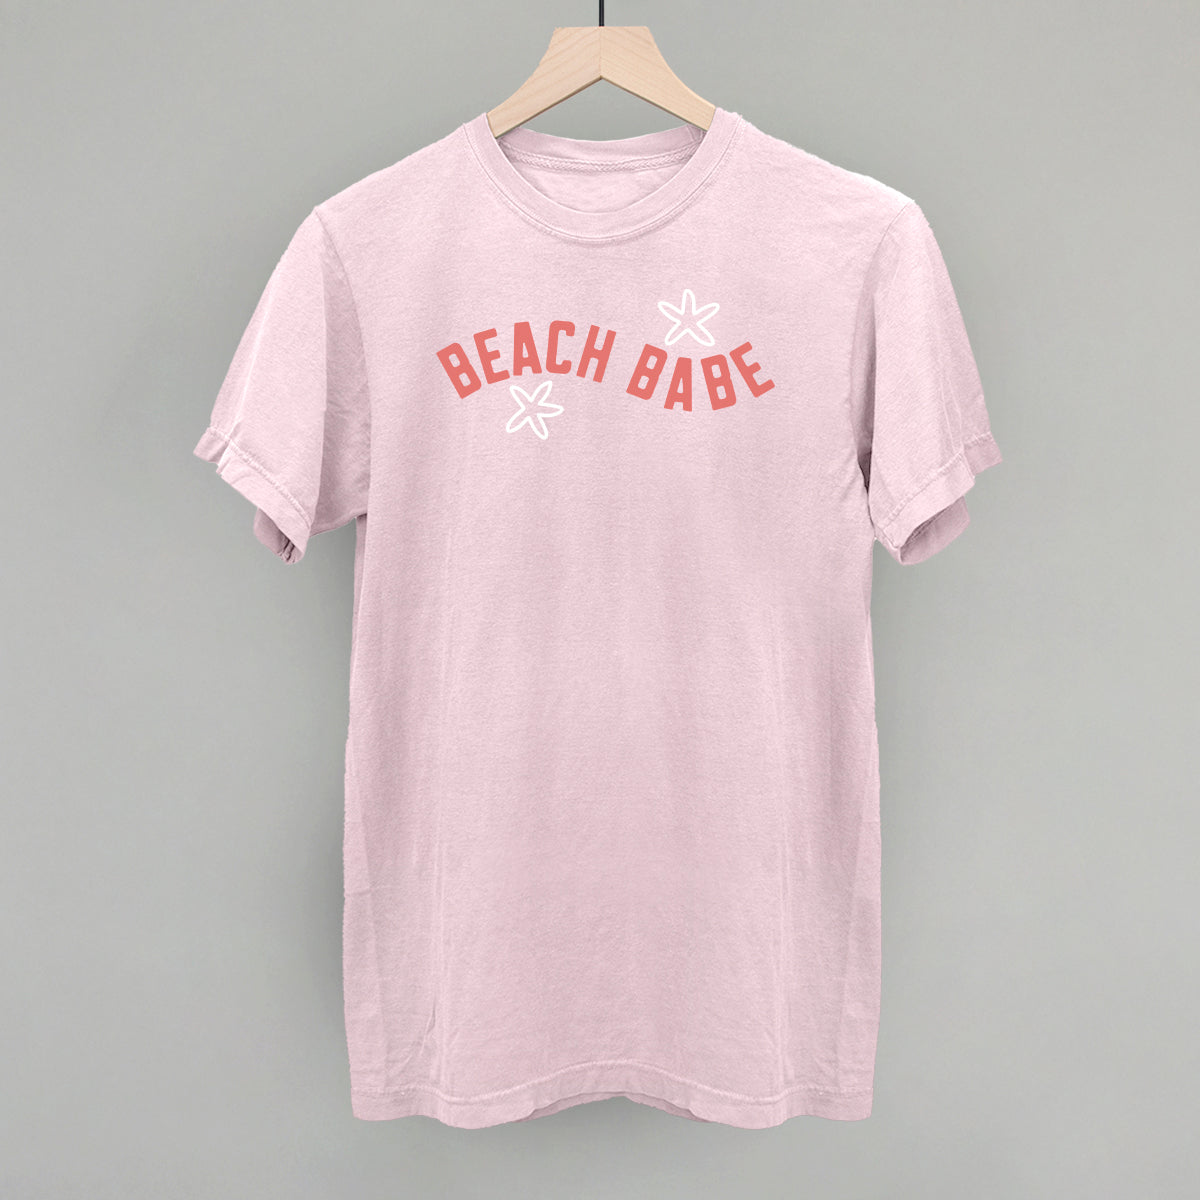 Beach Babe (Wave)